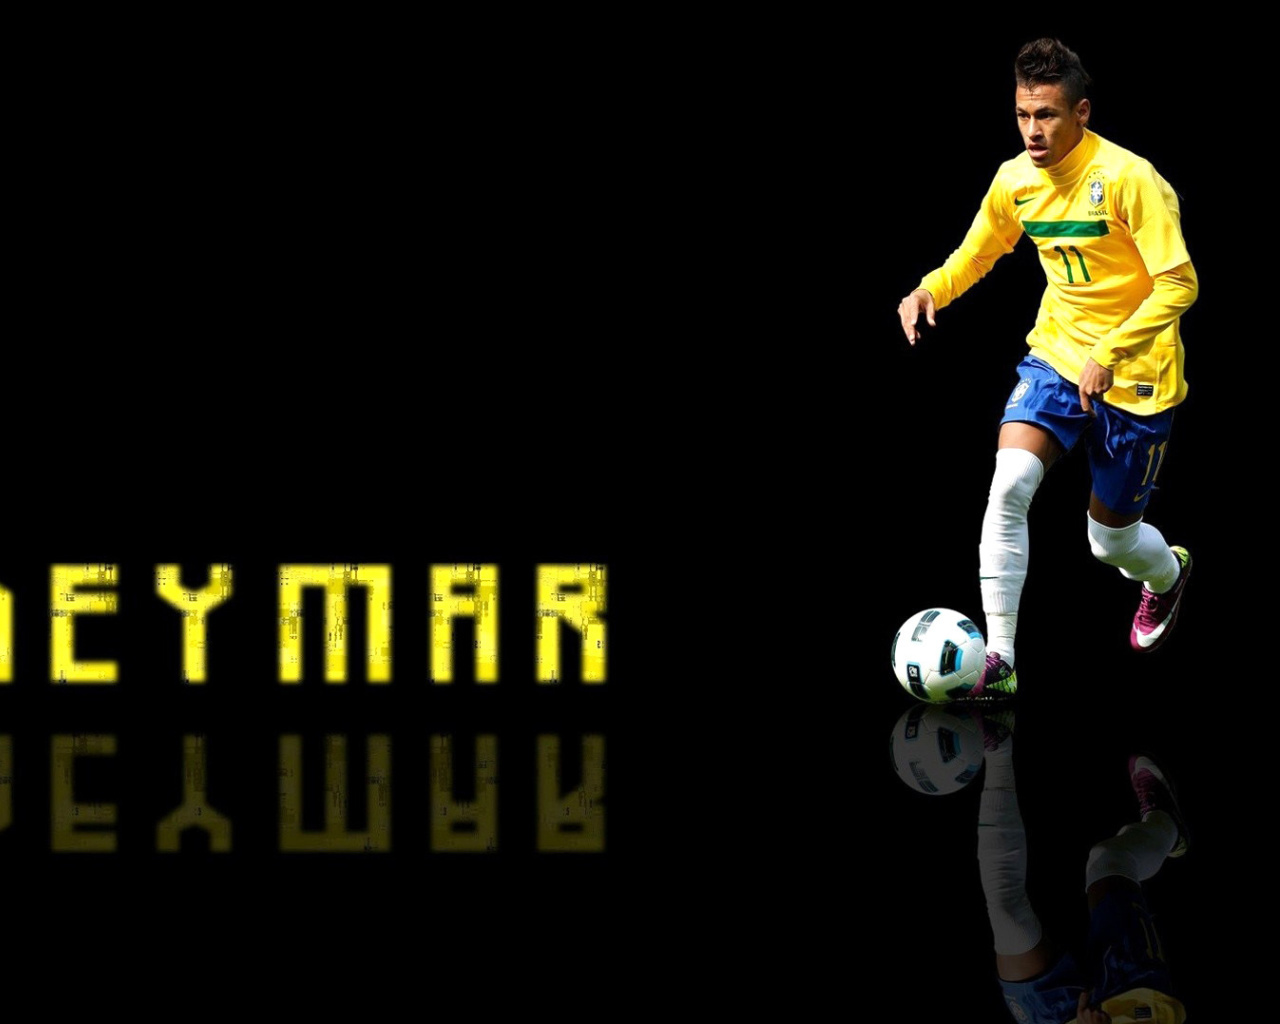 Das Neymar Brazilian Professional Footballer Wallpaper 1280x1024